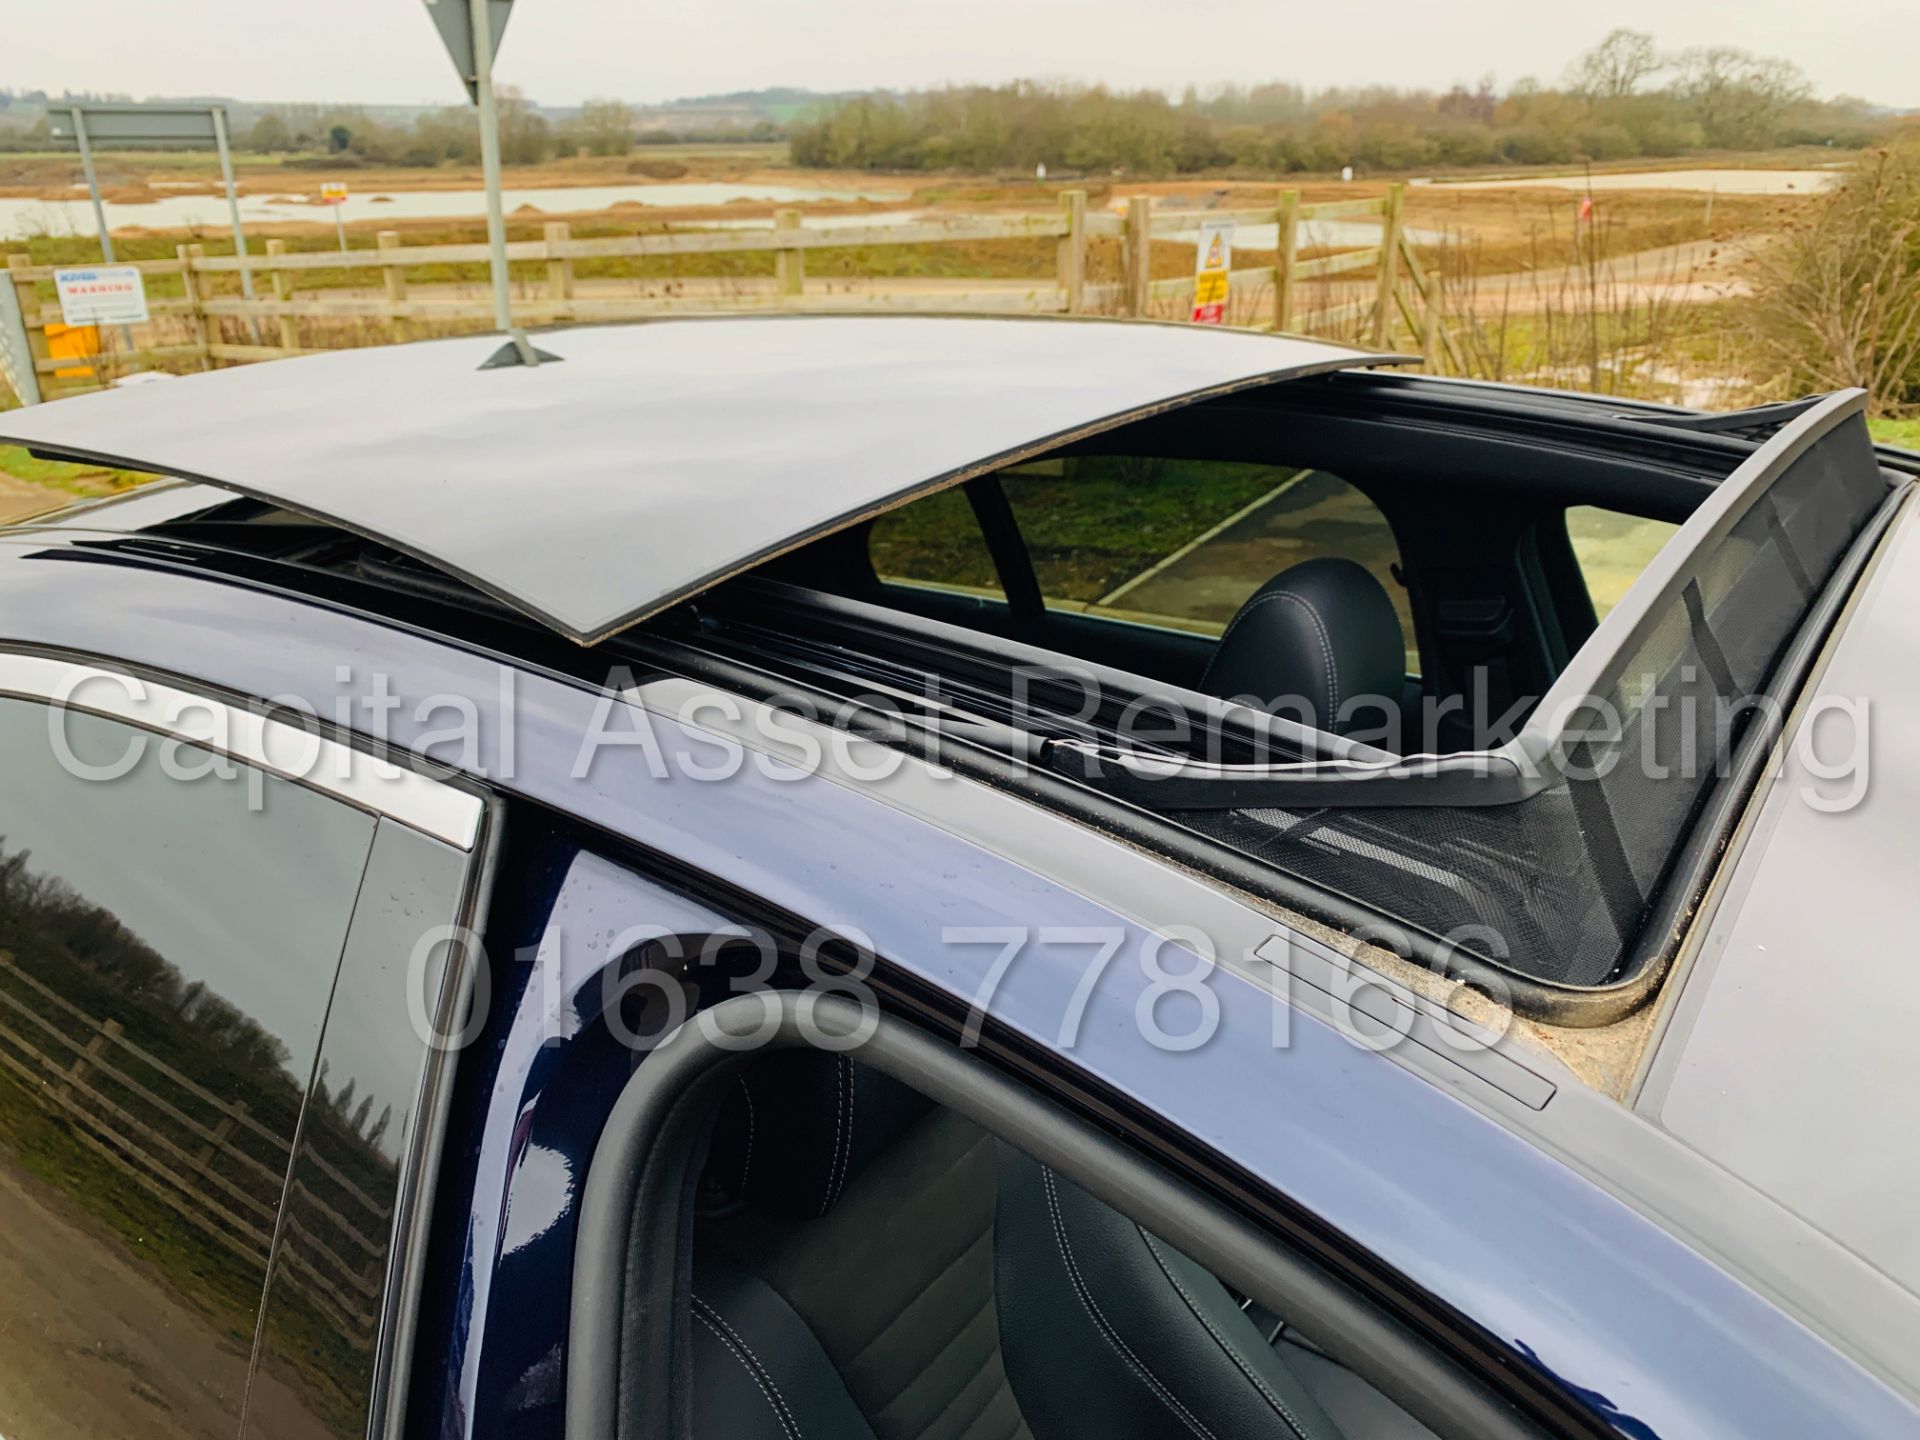 (ON SALE) MERCEDES-BENZ E220D *AMG LINE PREMIUM PLUS* SALOON (2019 MODEL) '9-G TRONIC AUTO' - Image 25 of 63